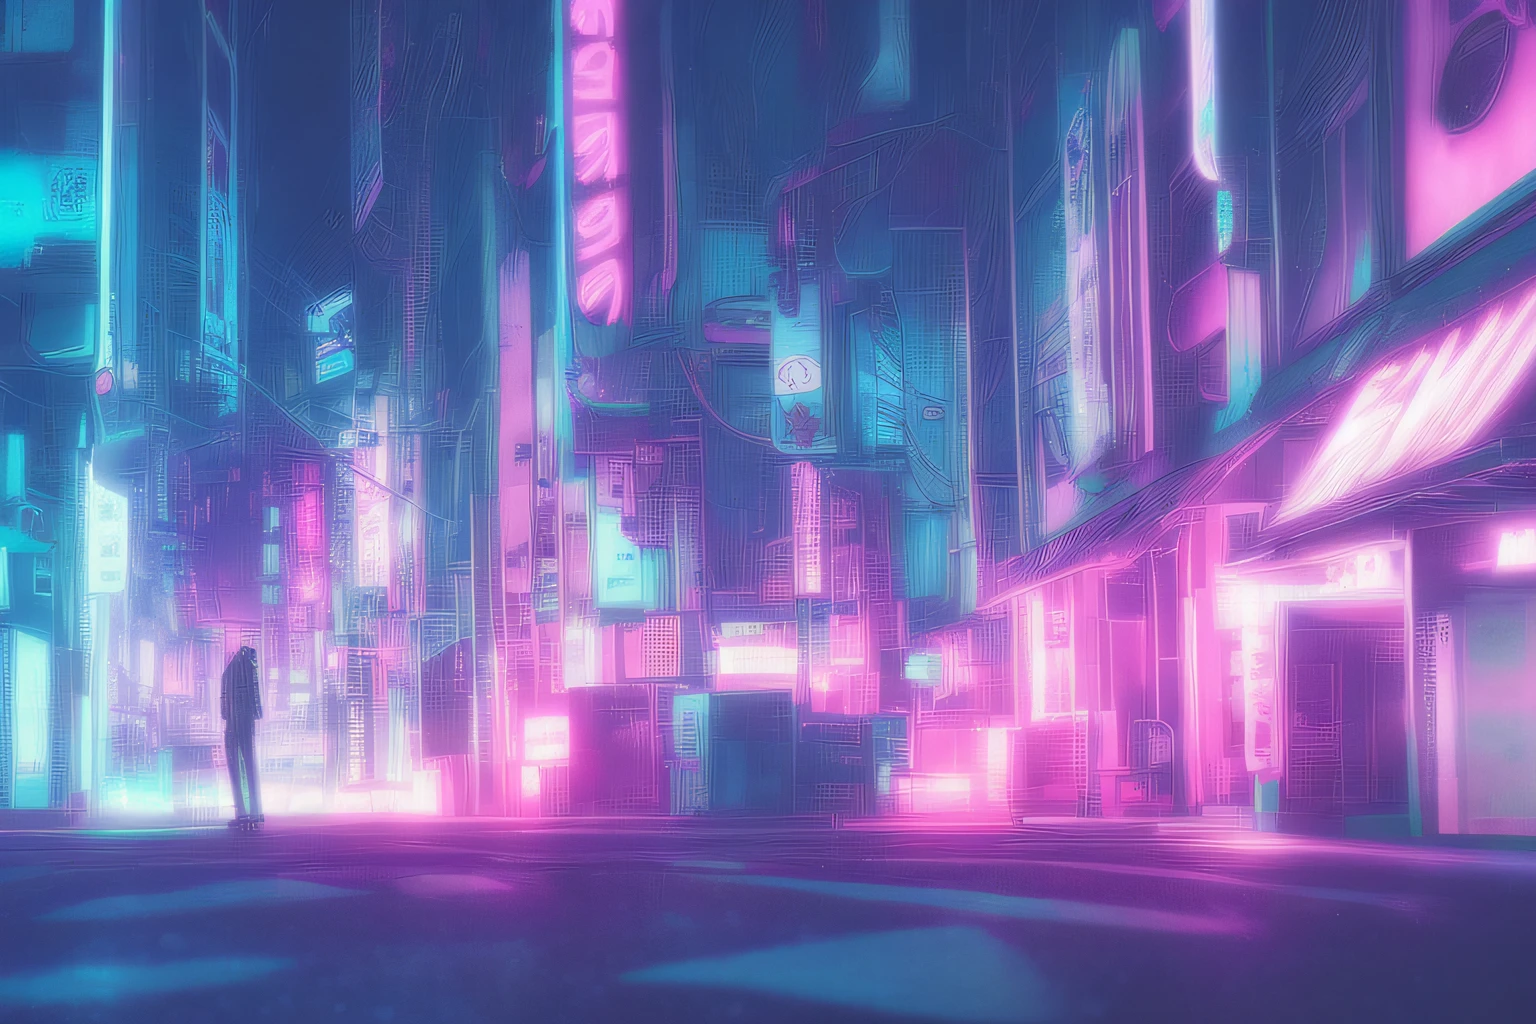 动漫背景,90 年代城市朋克街头 ,foggy futuristic 電影 lighting,  半现实的, 环形照明 , 边缘照明, 電影, 合成波 ,BgAni黄昏